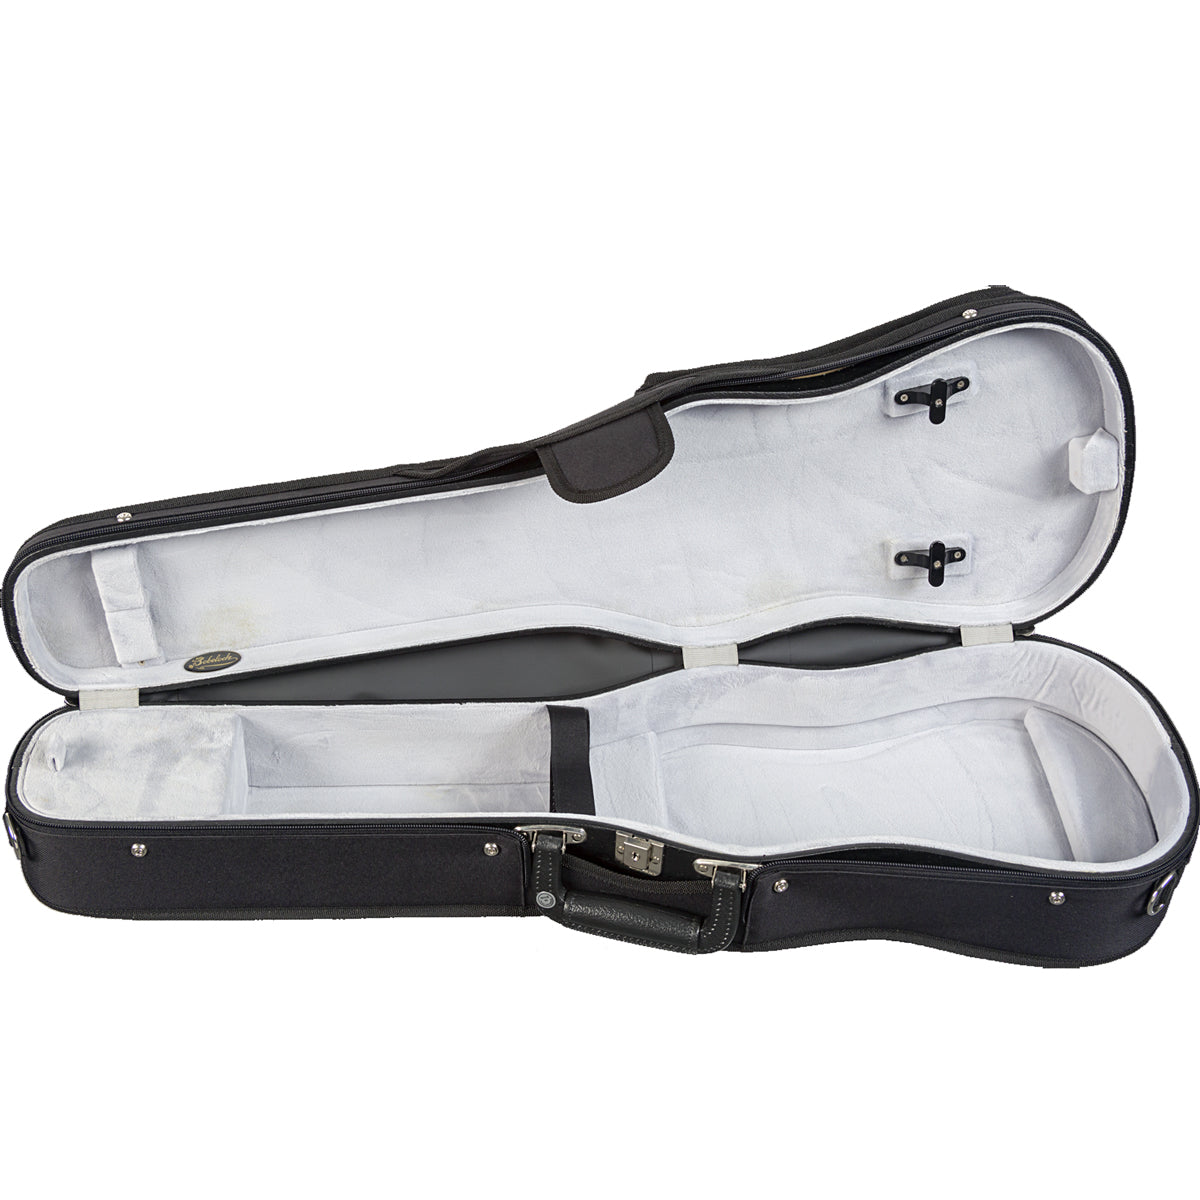 Bobelock 1007 Shaped Violin Case - Velour